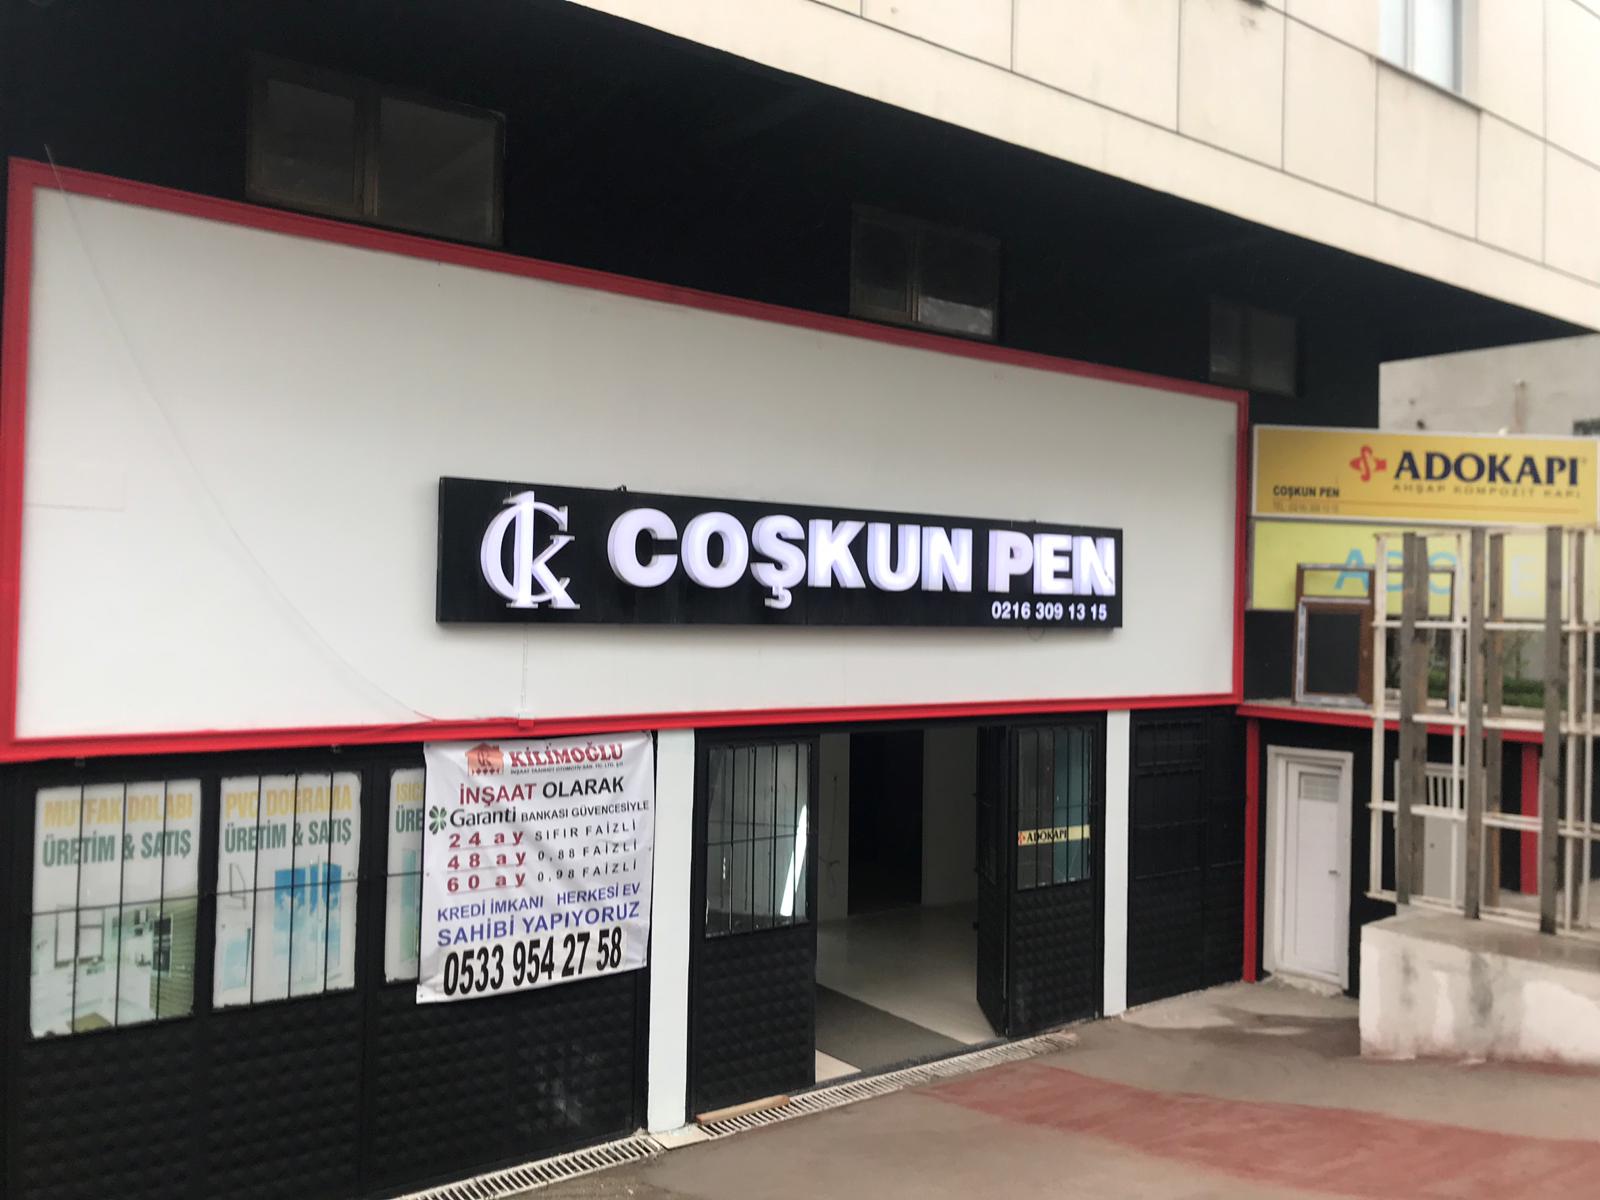 COŞKUN PEN - Dekorasyon Firması - İstanbul - TeklifSitesi.com - Komisyonsuz Talep ve Teklif Platformu